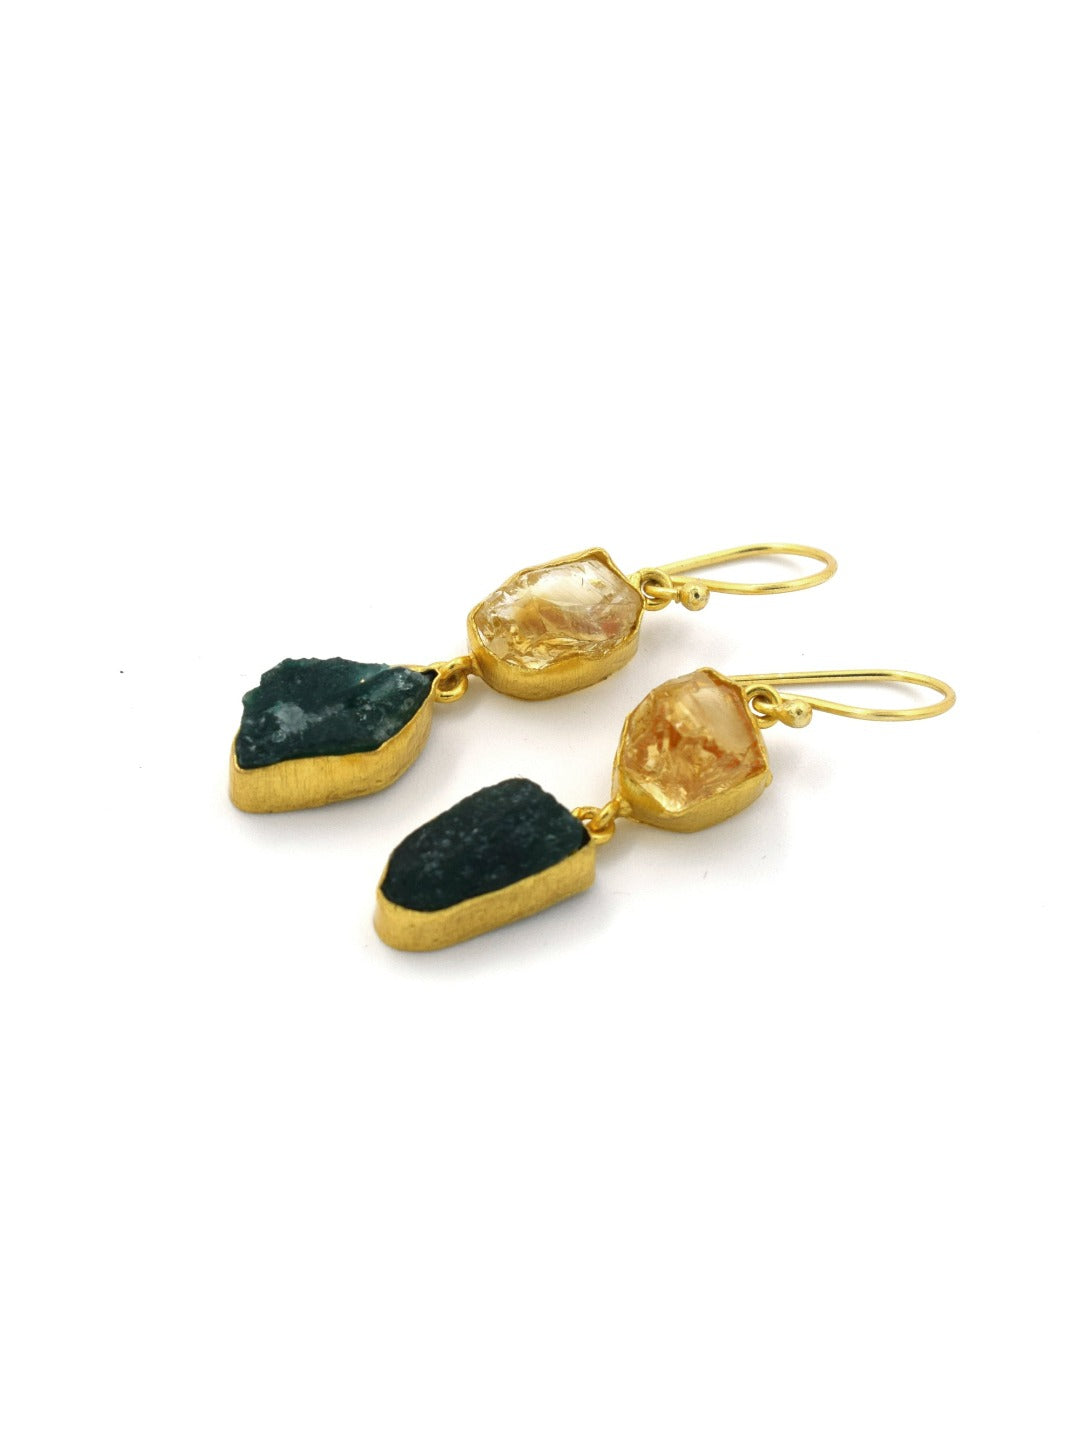 Dual semi precious stones dangler earrings